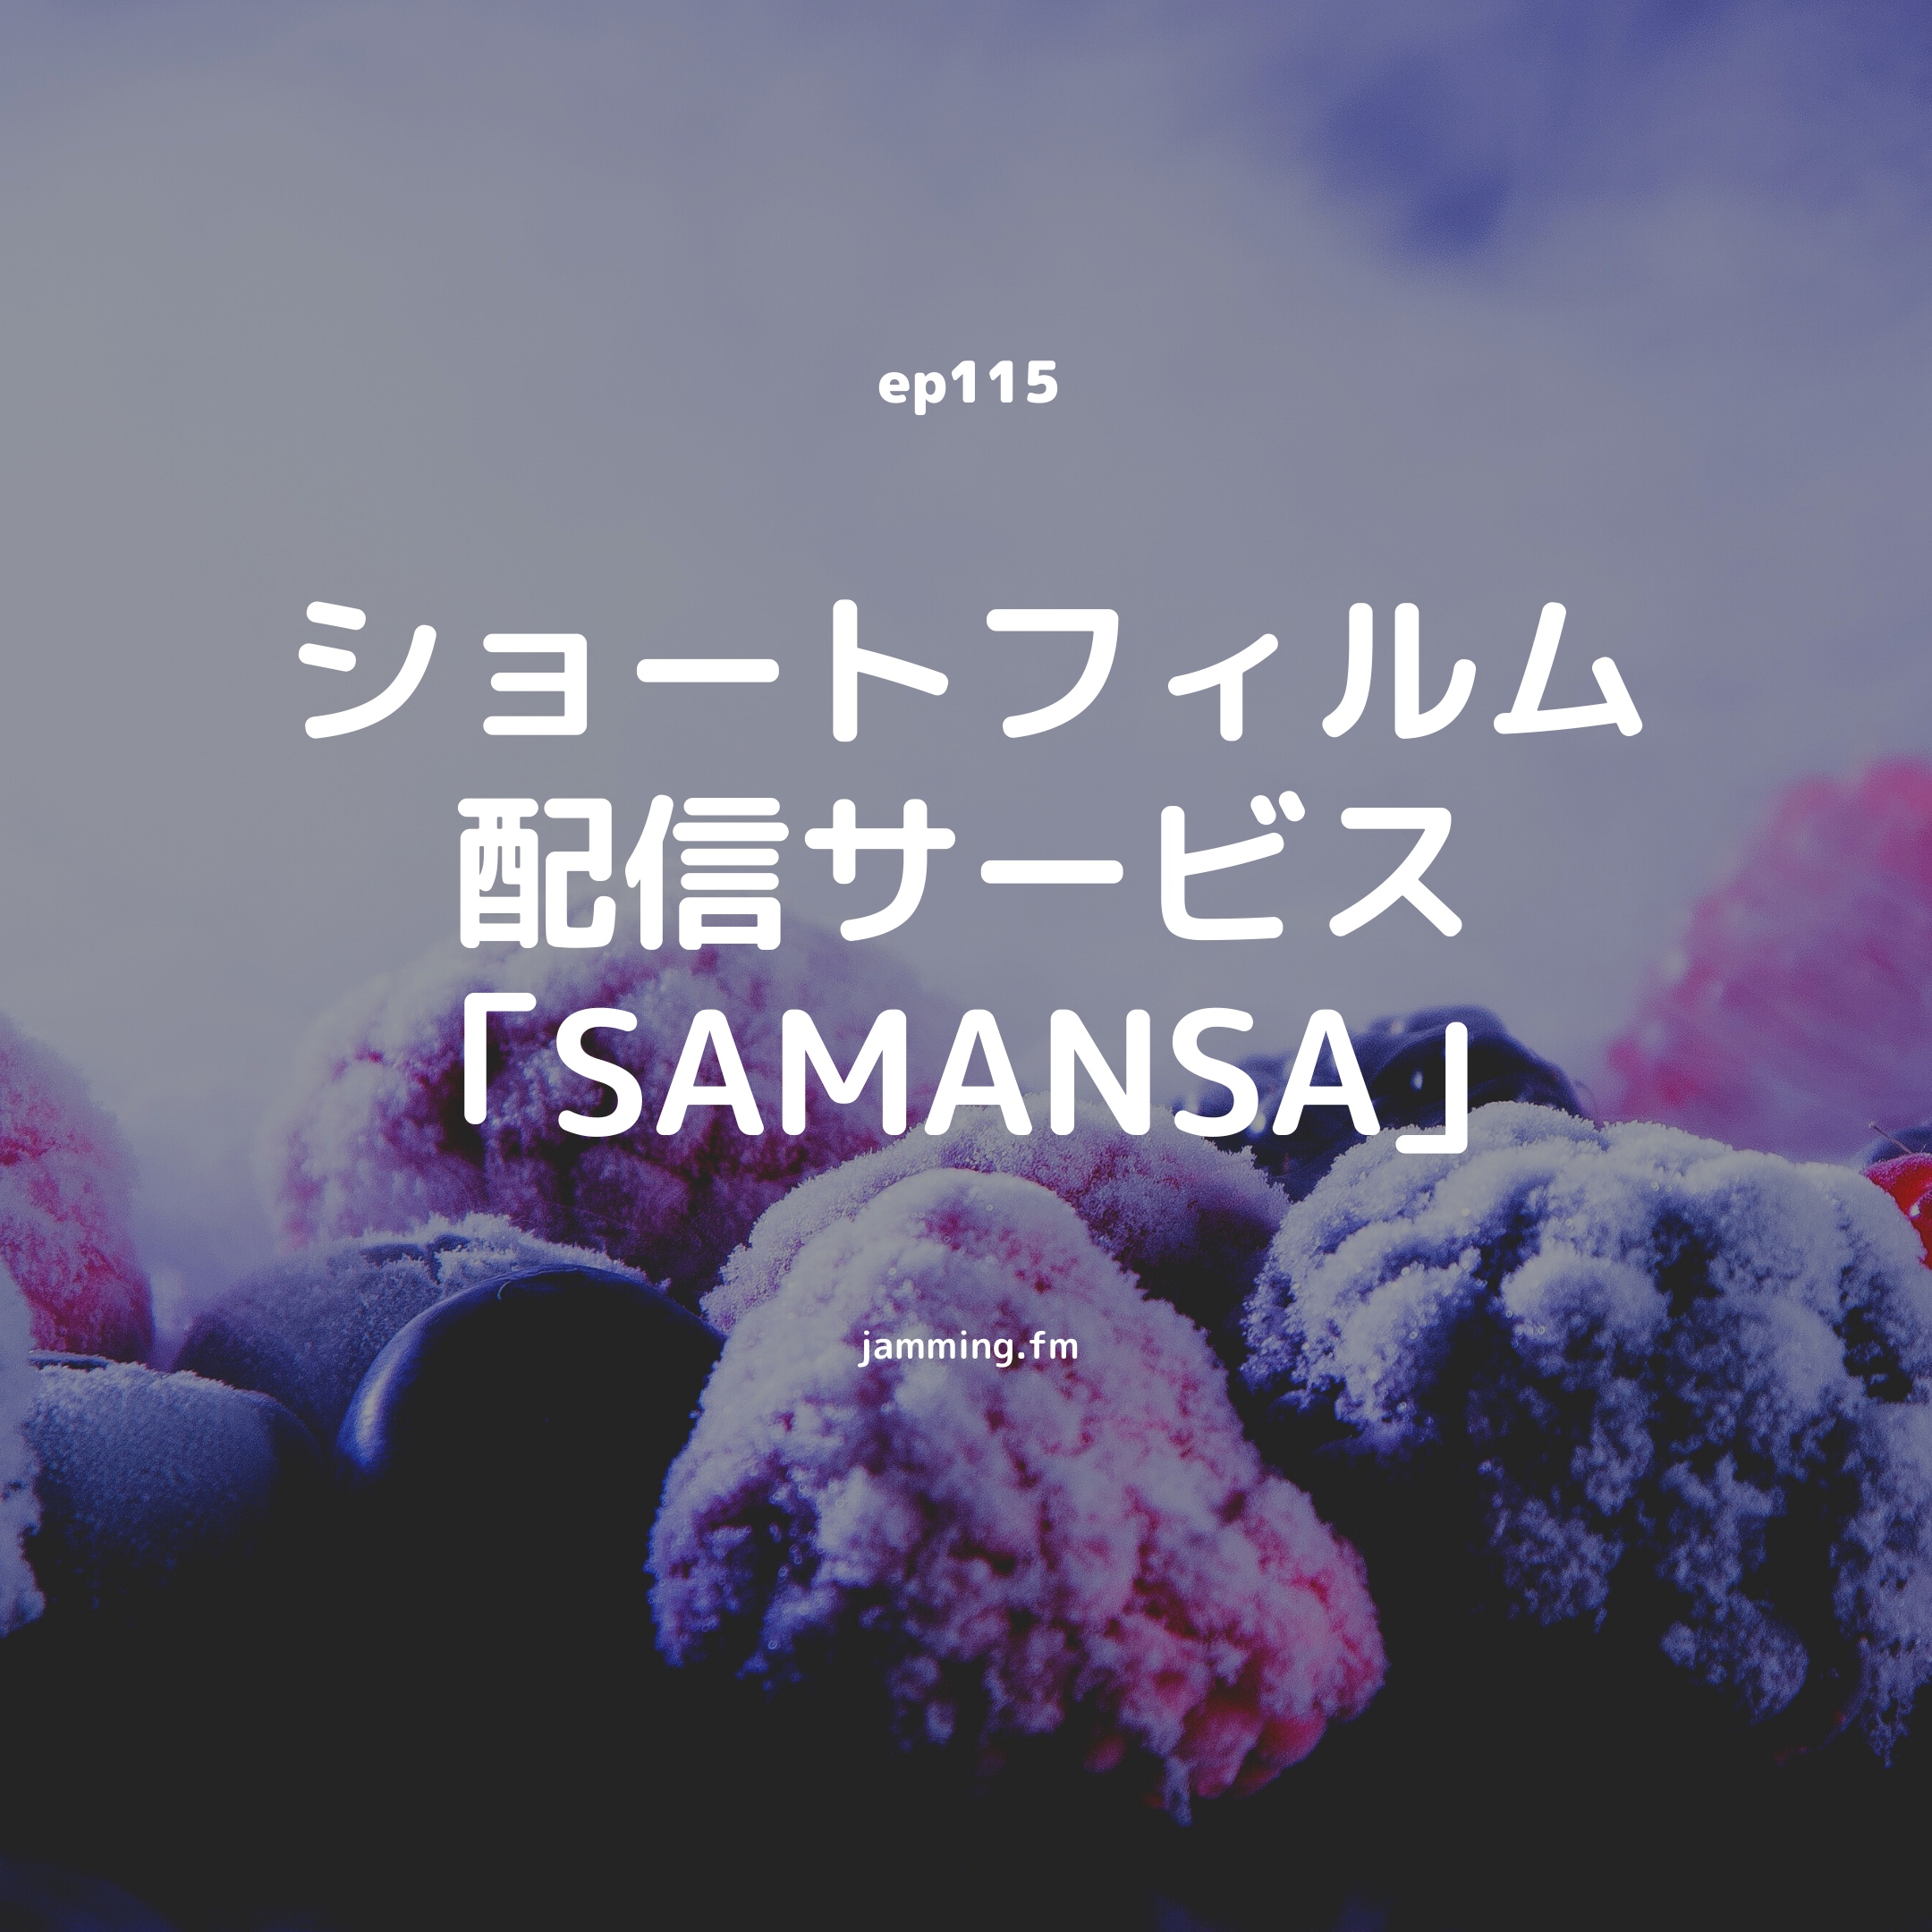 ep115:ショートフィルム配信サービス「SAMANSA」- Featured Shot